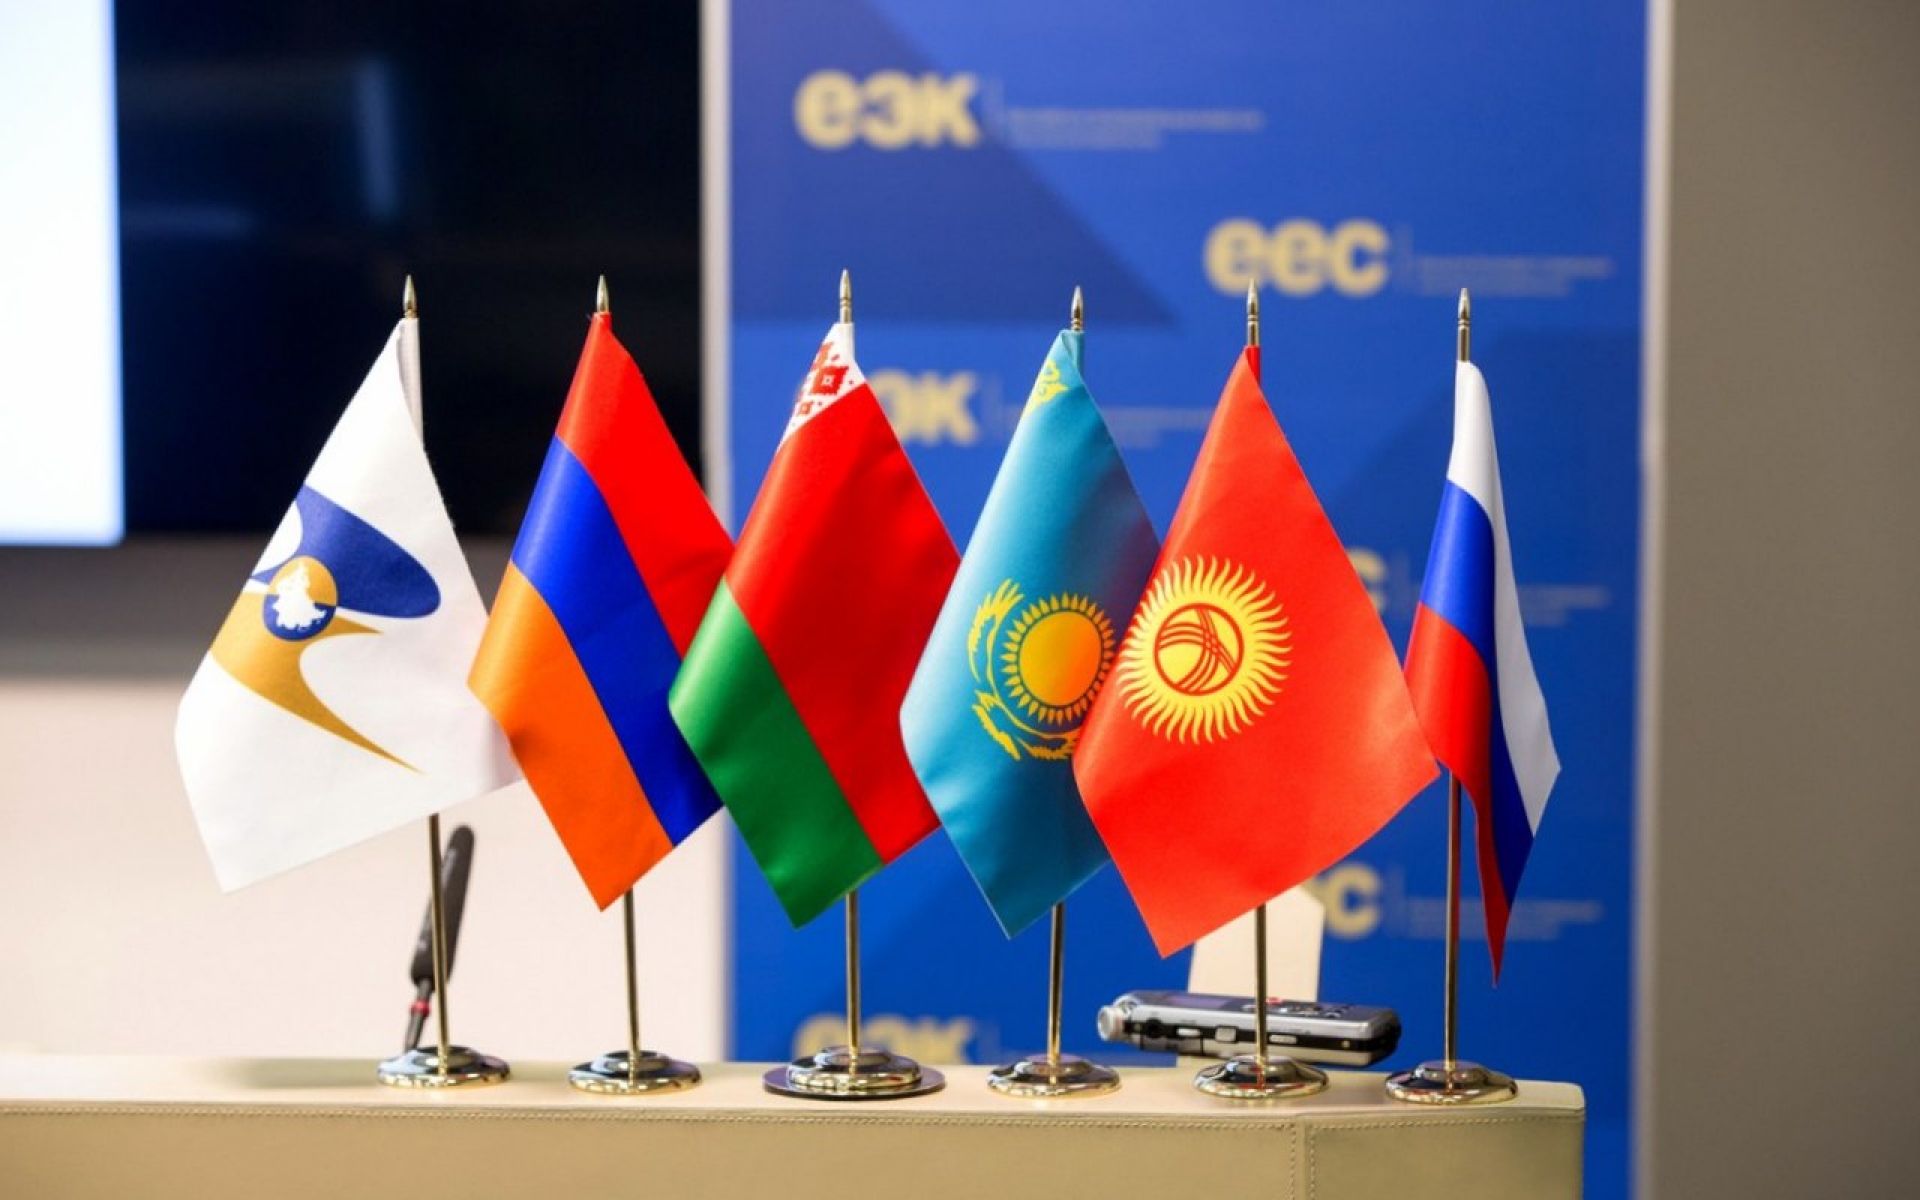 Товарооборот Казахстана со странами ЕАЭС увеличился на 4,5%